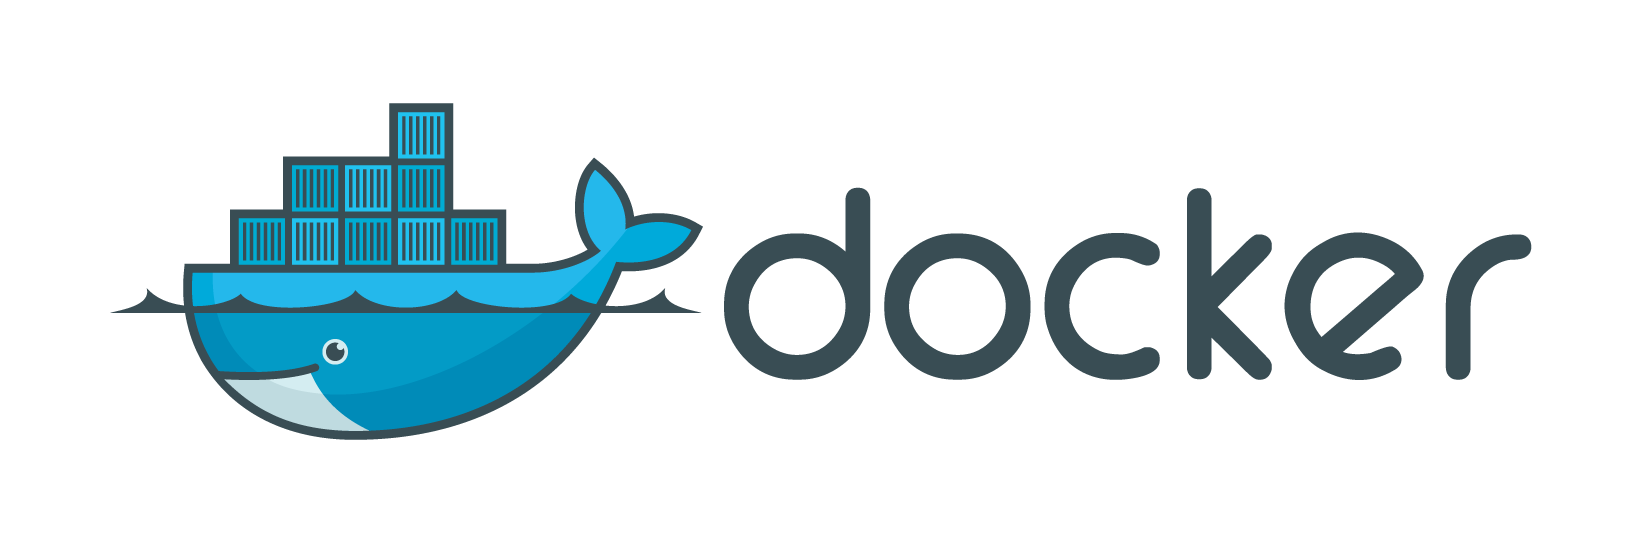 Docker 1.x logo